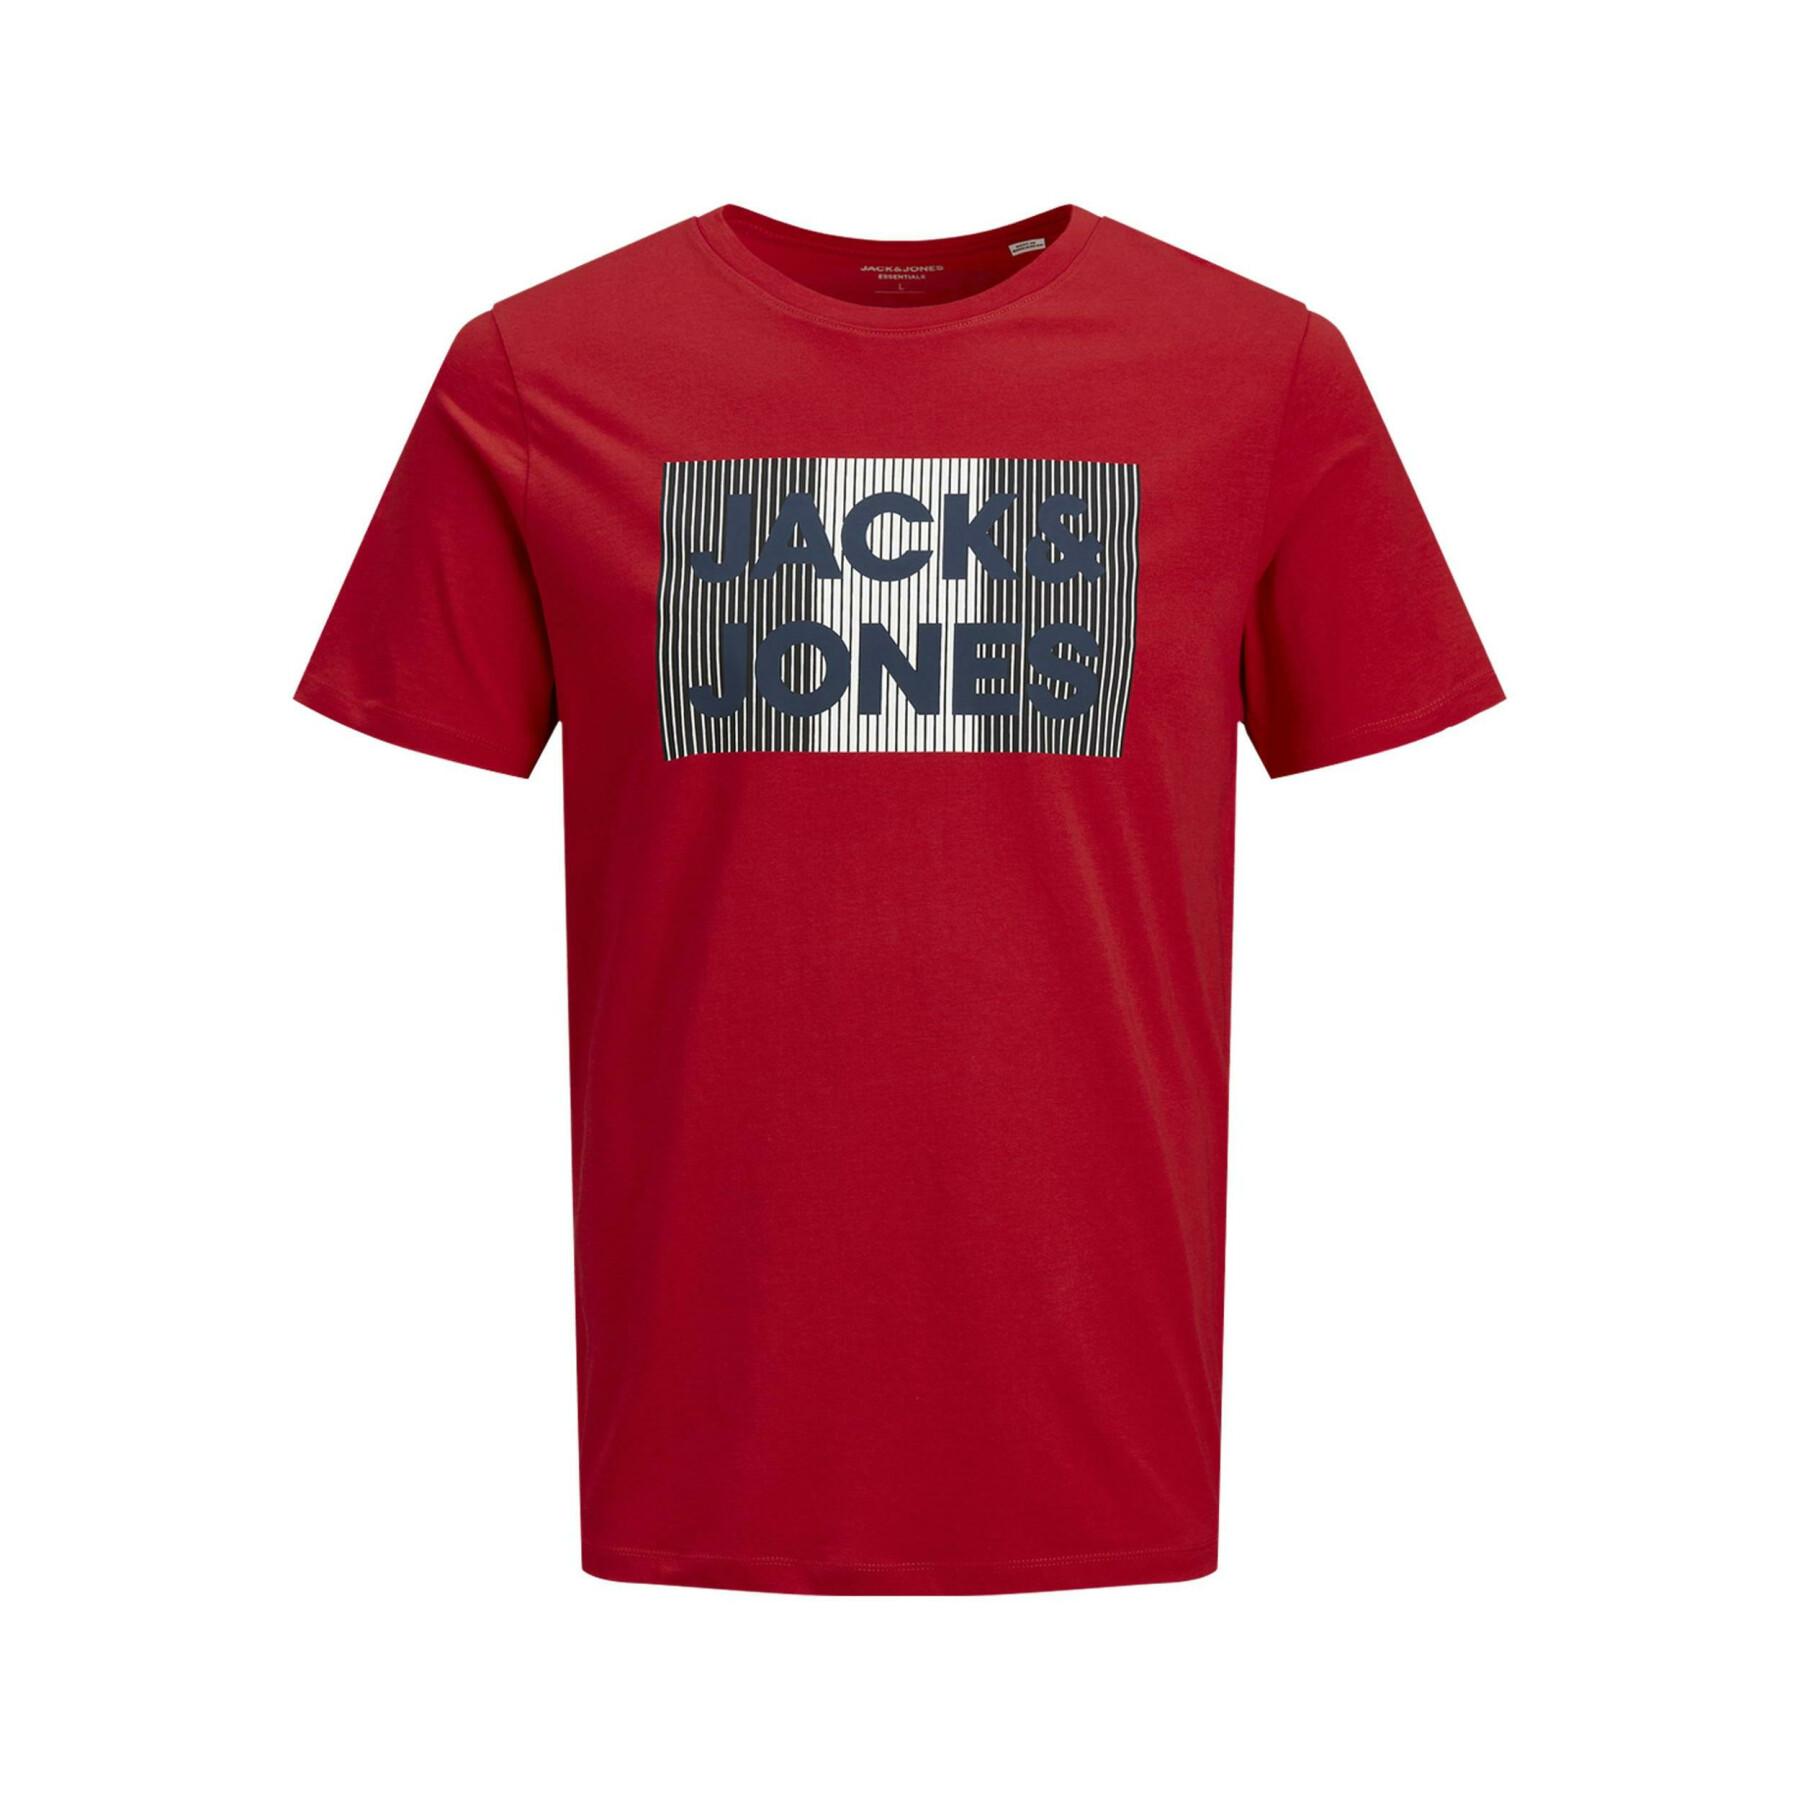 Lot de 3 t-shirts enfant Jack & Jones corp logo